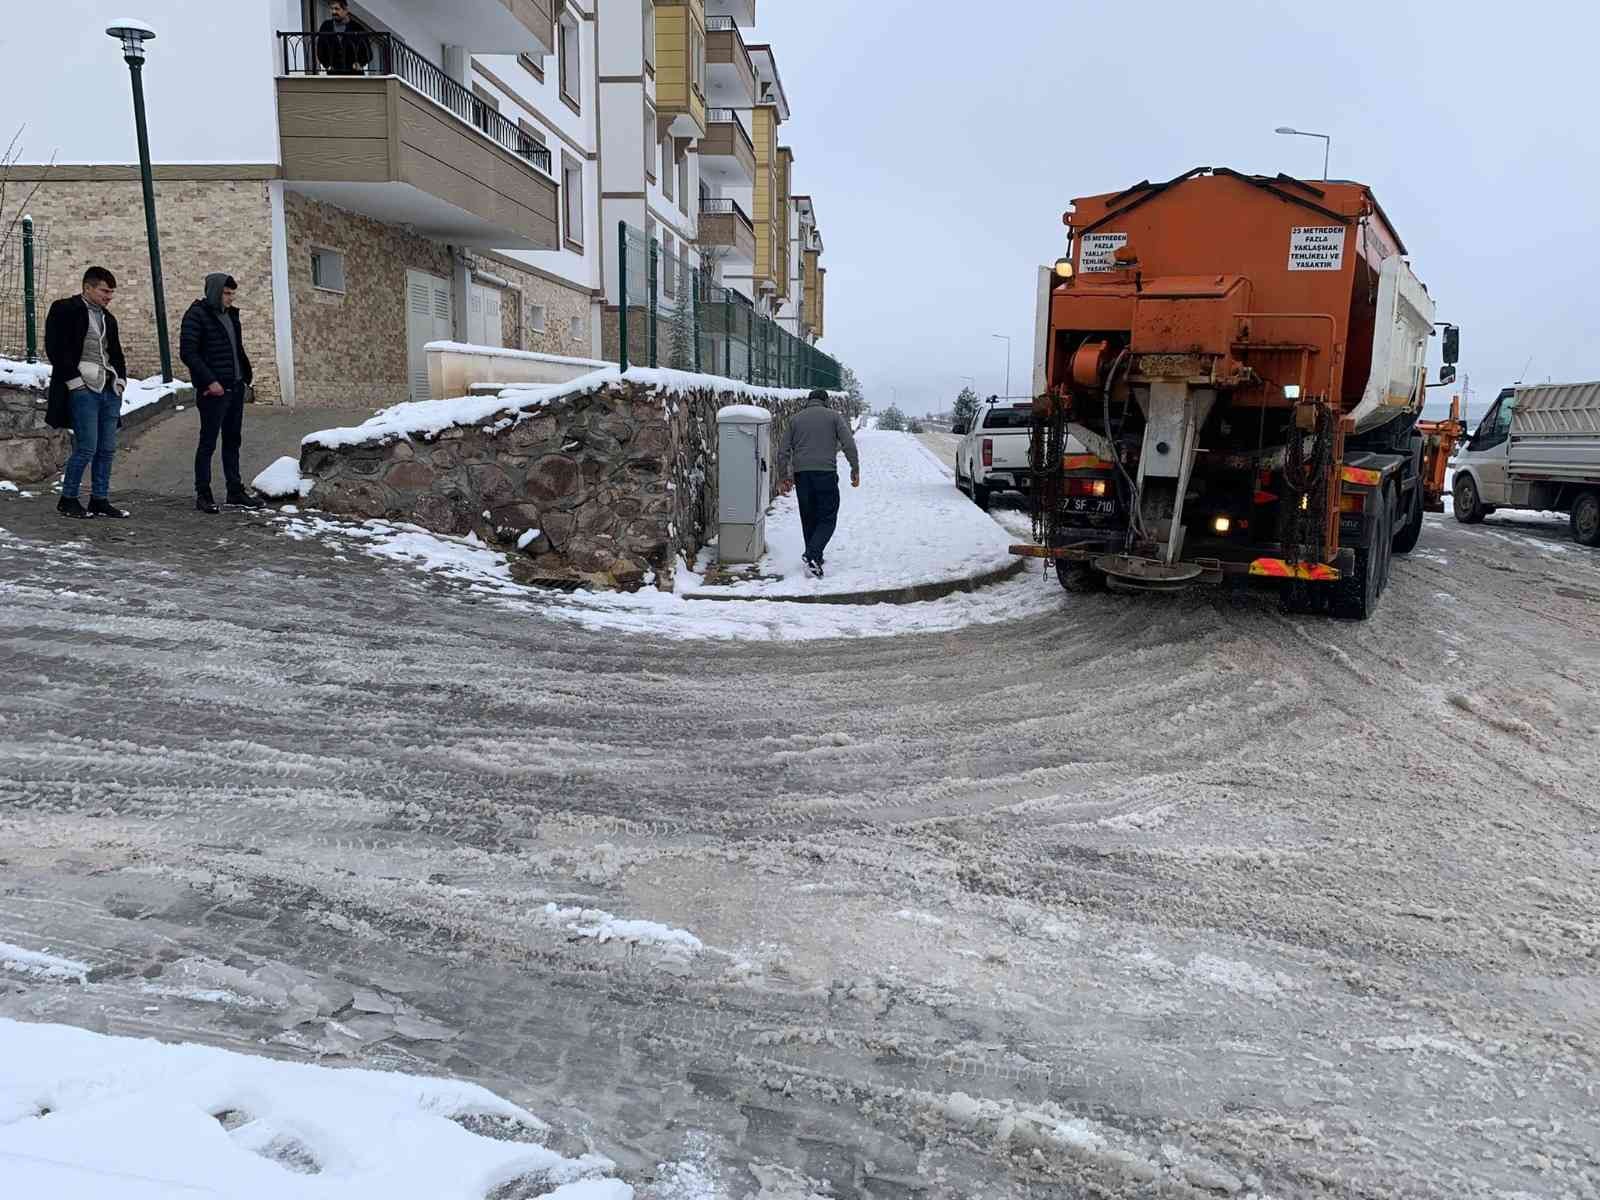 Kastamonu Belediyesi, kar yağışının ardından temizlik çalışması başlattı #kastamonu